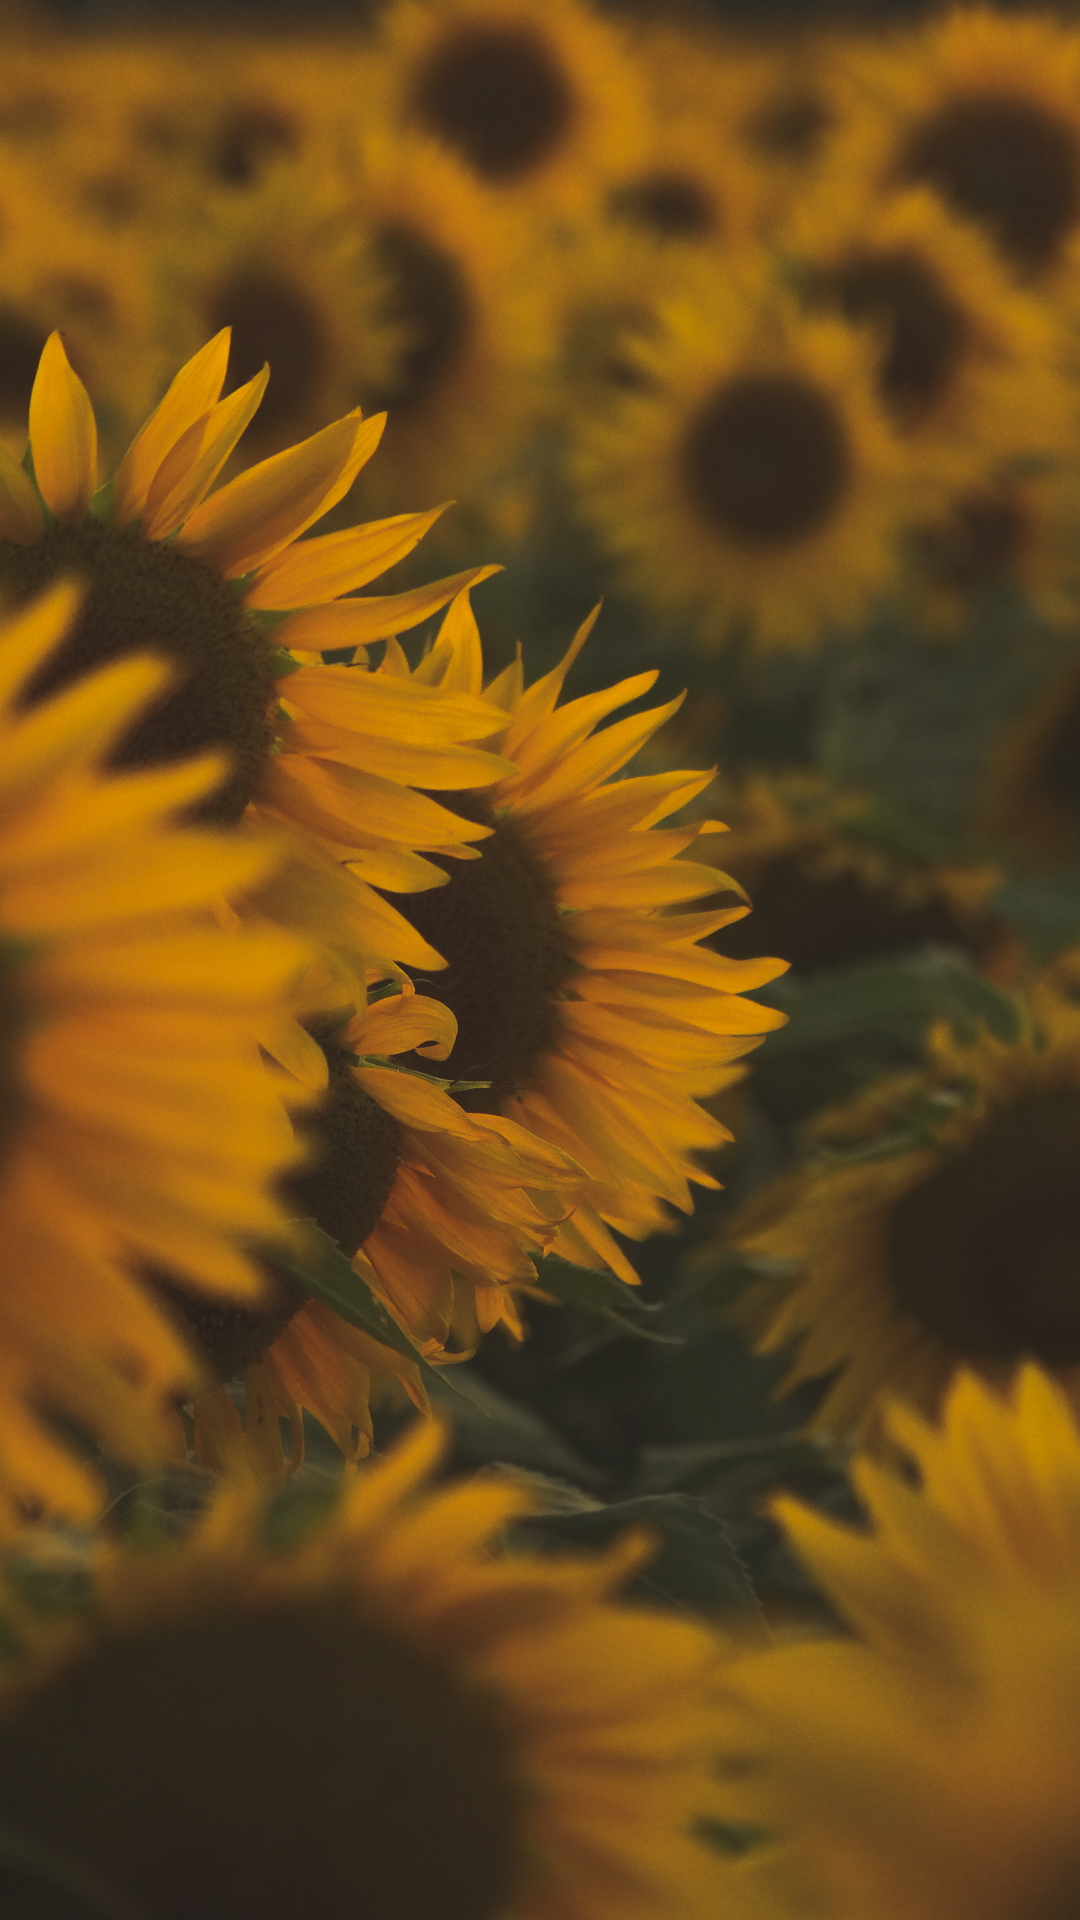 Sunflower Background Fedplanchon